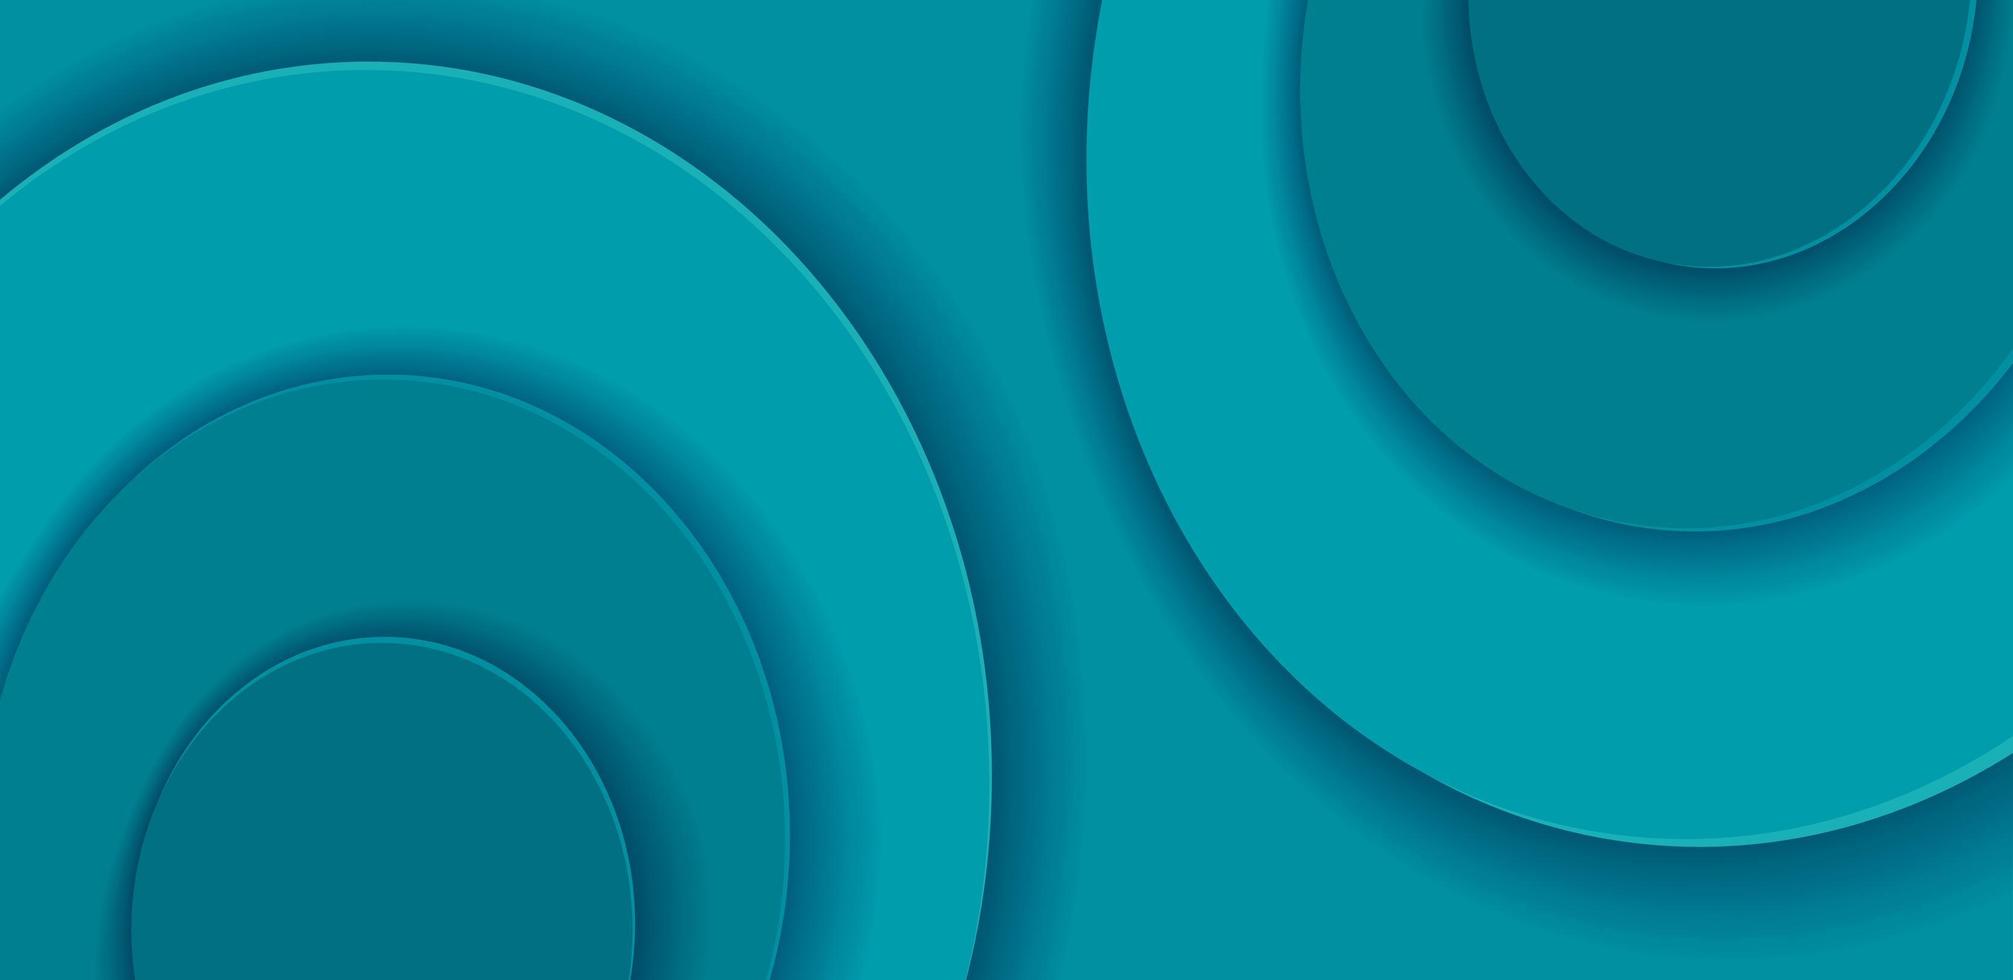 papier gesneden ronde vormen op horizontale achtergrond. abstracte turquoise vector sjabloon met meerdere lagen gladde vormen. modern 3D-ontwerp. geometrische brochure laag illustratie